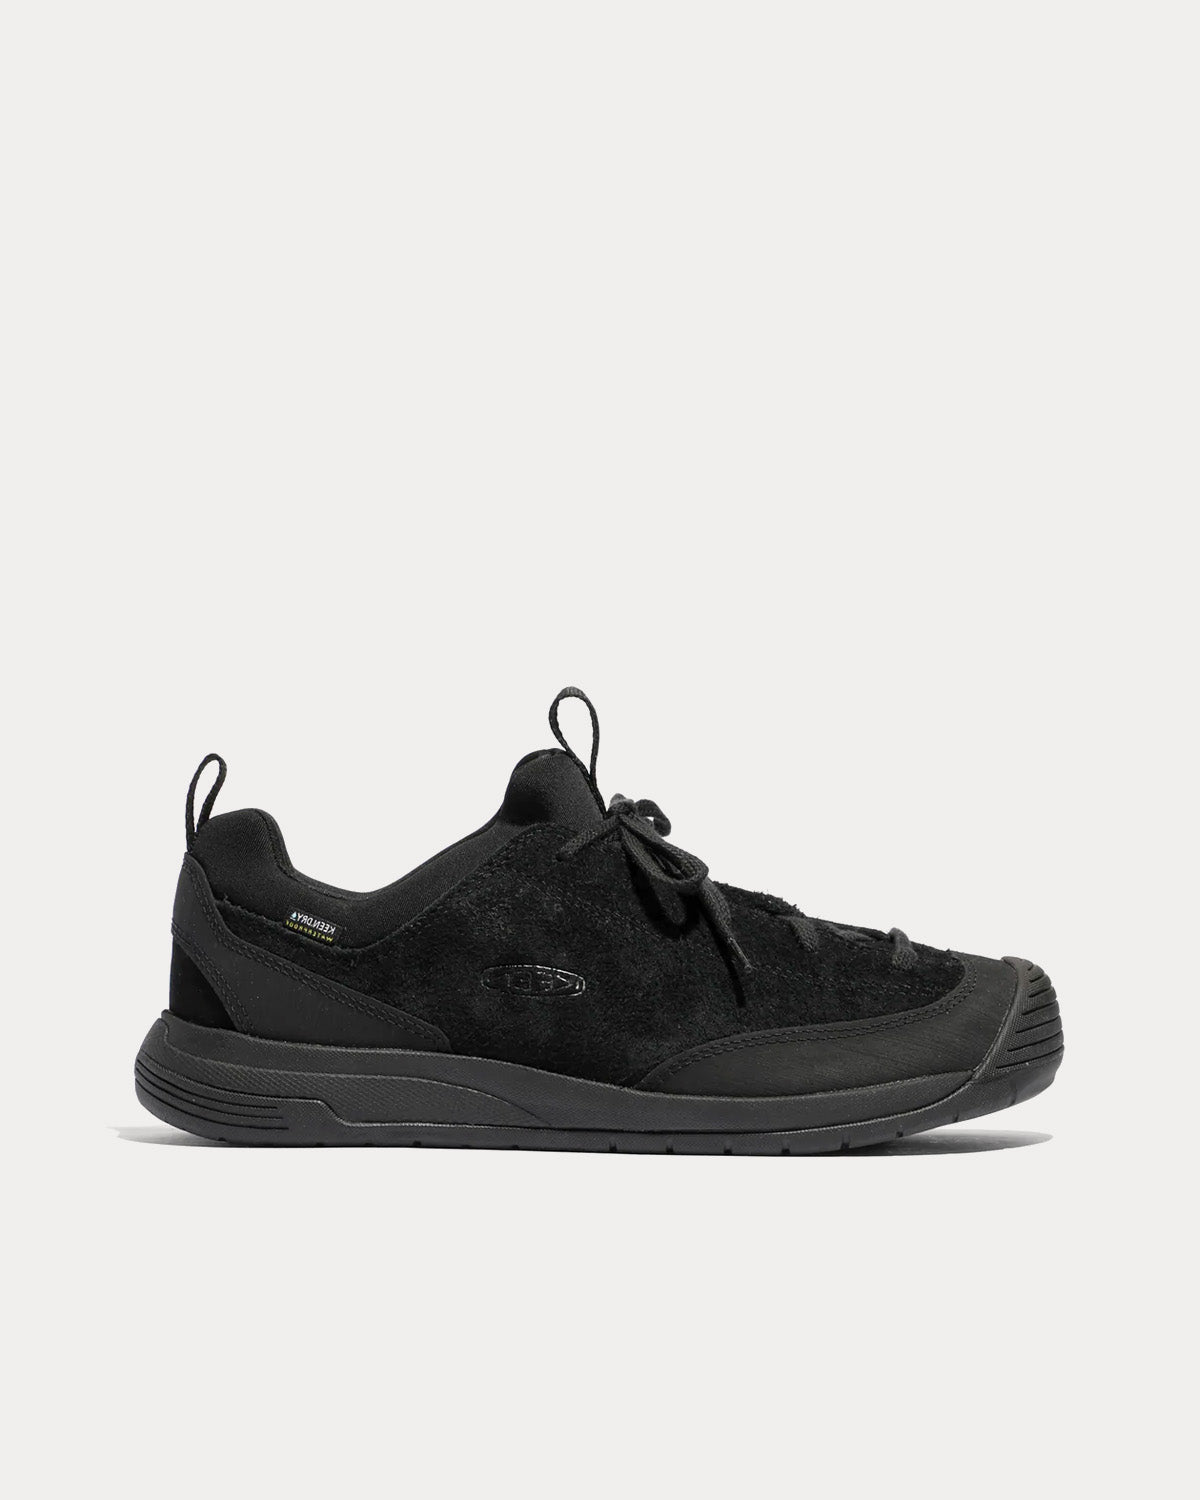 Keen x Engineered Garments - Jasper II Waterproof Moc Black Low Top Sneakers